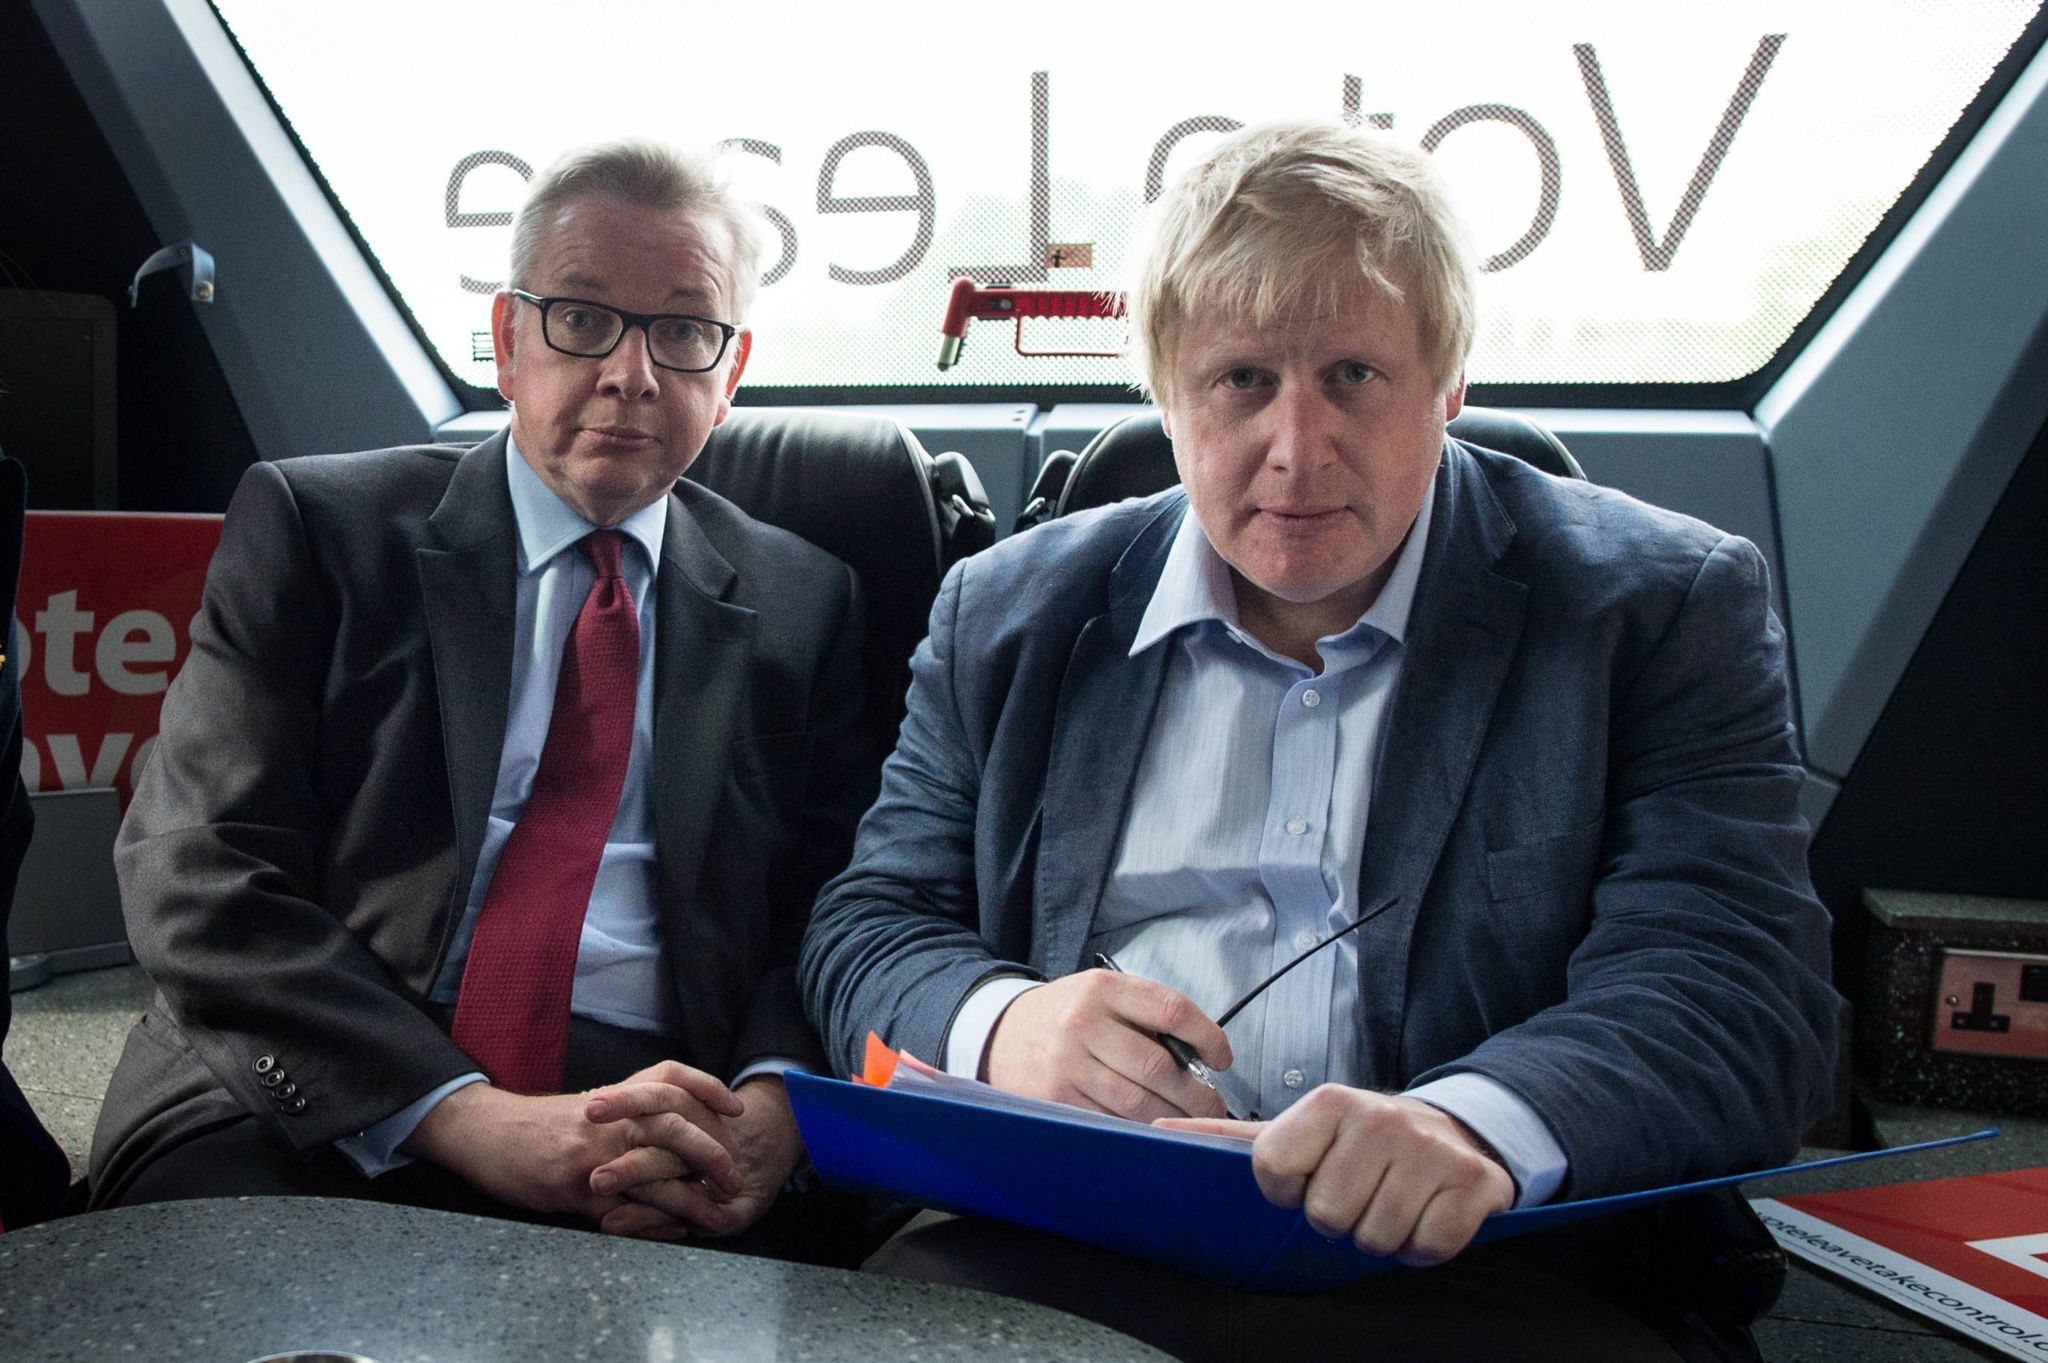 Майкл Гоув и Борис Джонсон (справа) в автобусе кампании «Голосуй за выход» в Ланкашире в рамках кампании референдума «Голосуй за выход из ЕС»